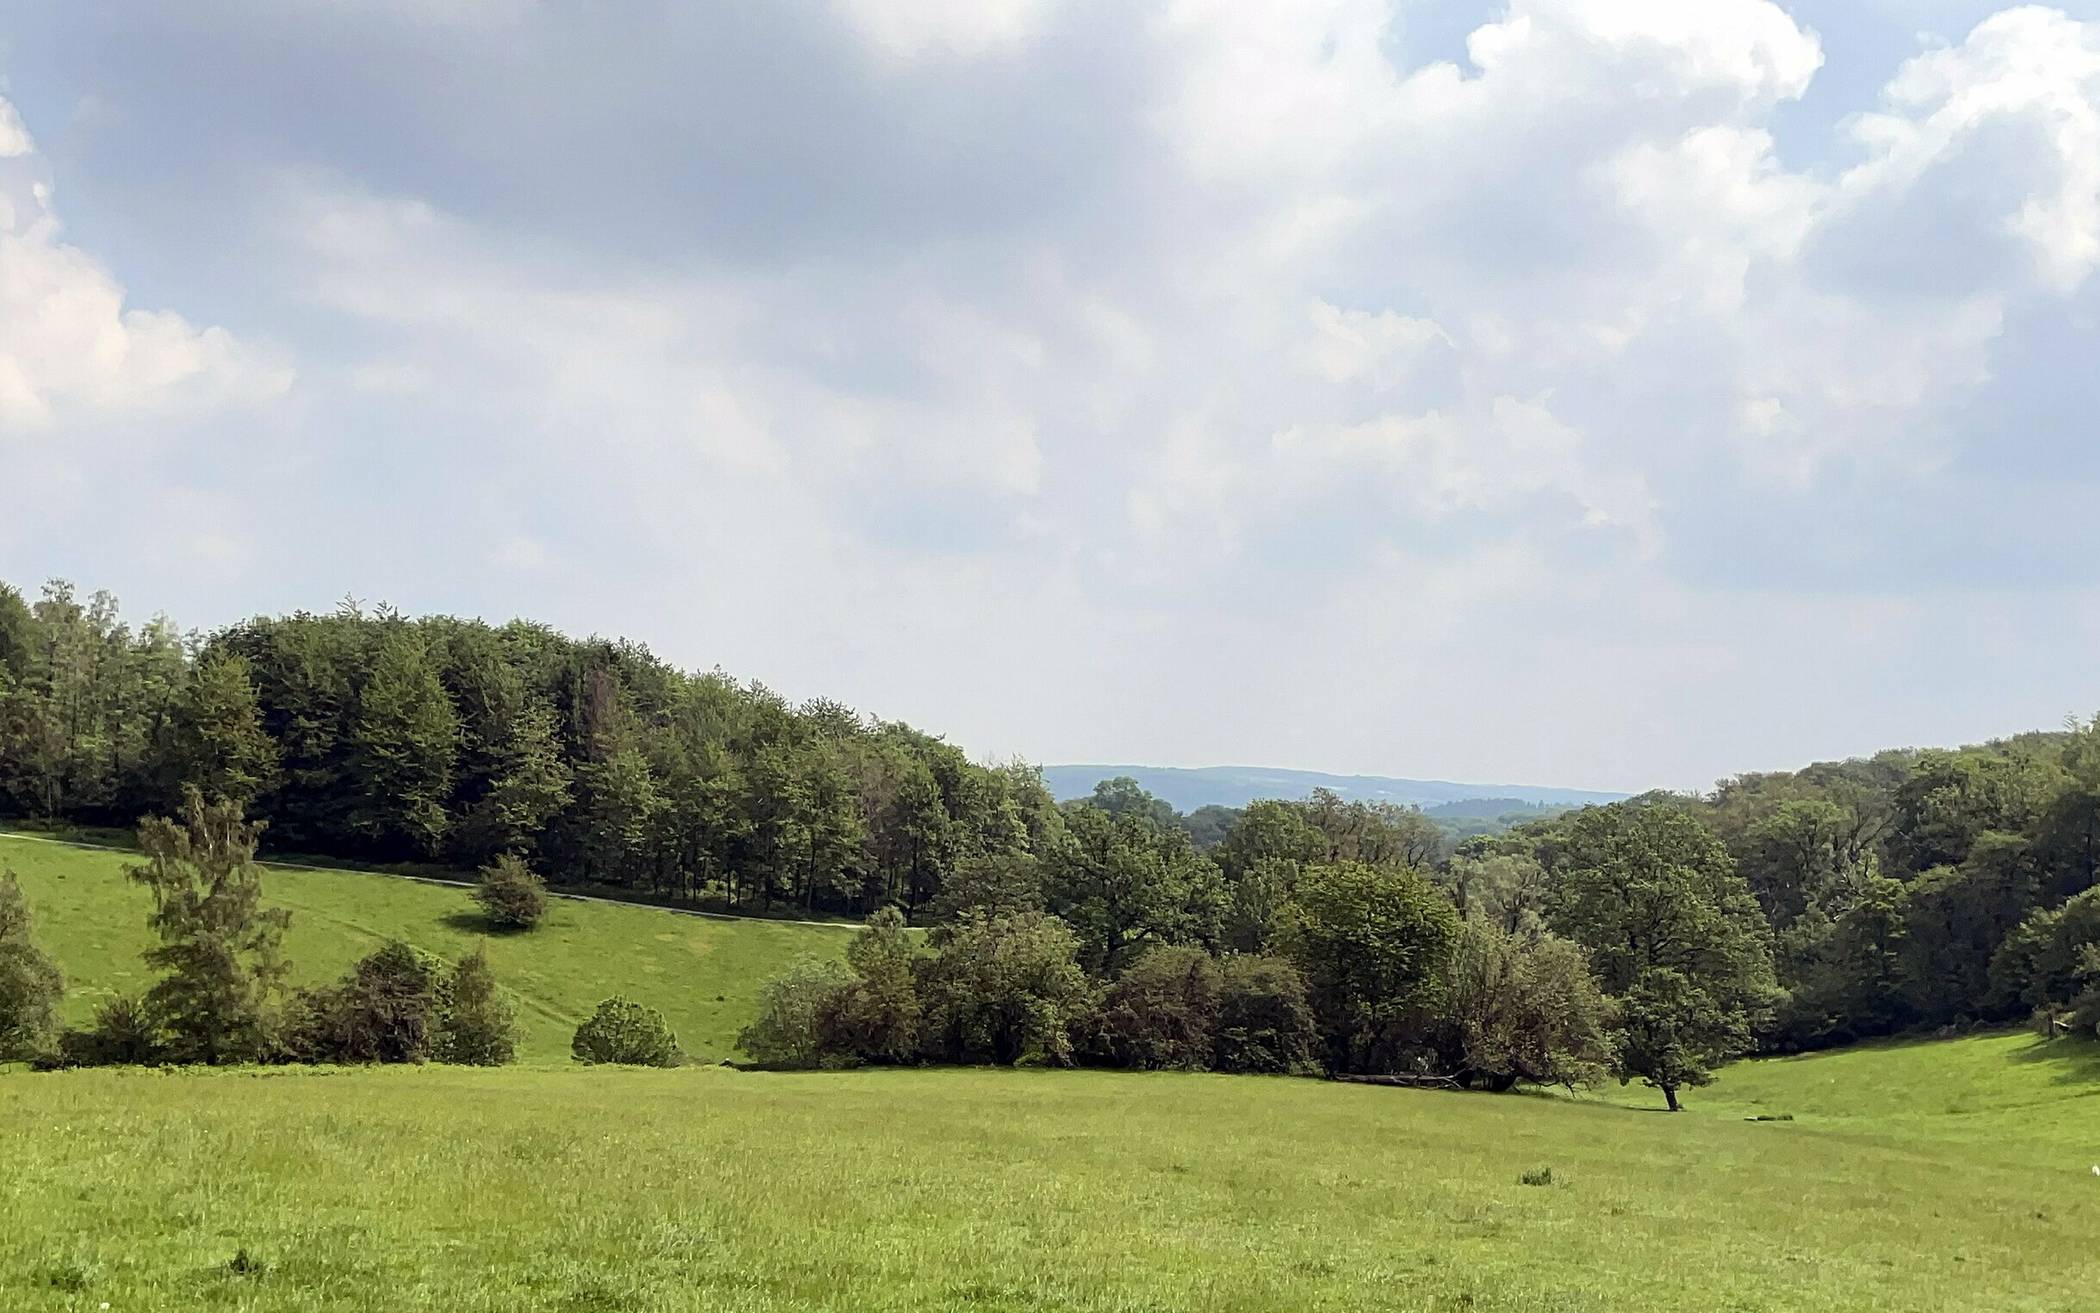  185 Hektar grüne Oase mit Konfliktpotenzial: der Scharpenacken. 